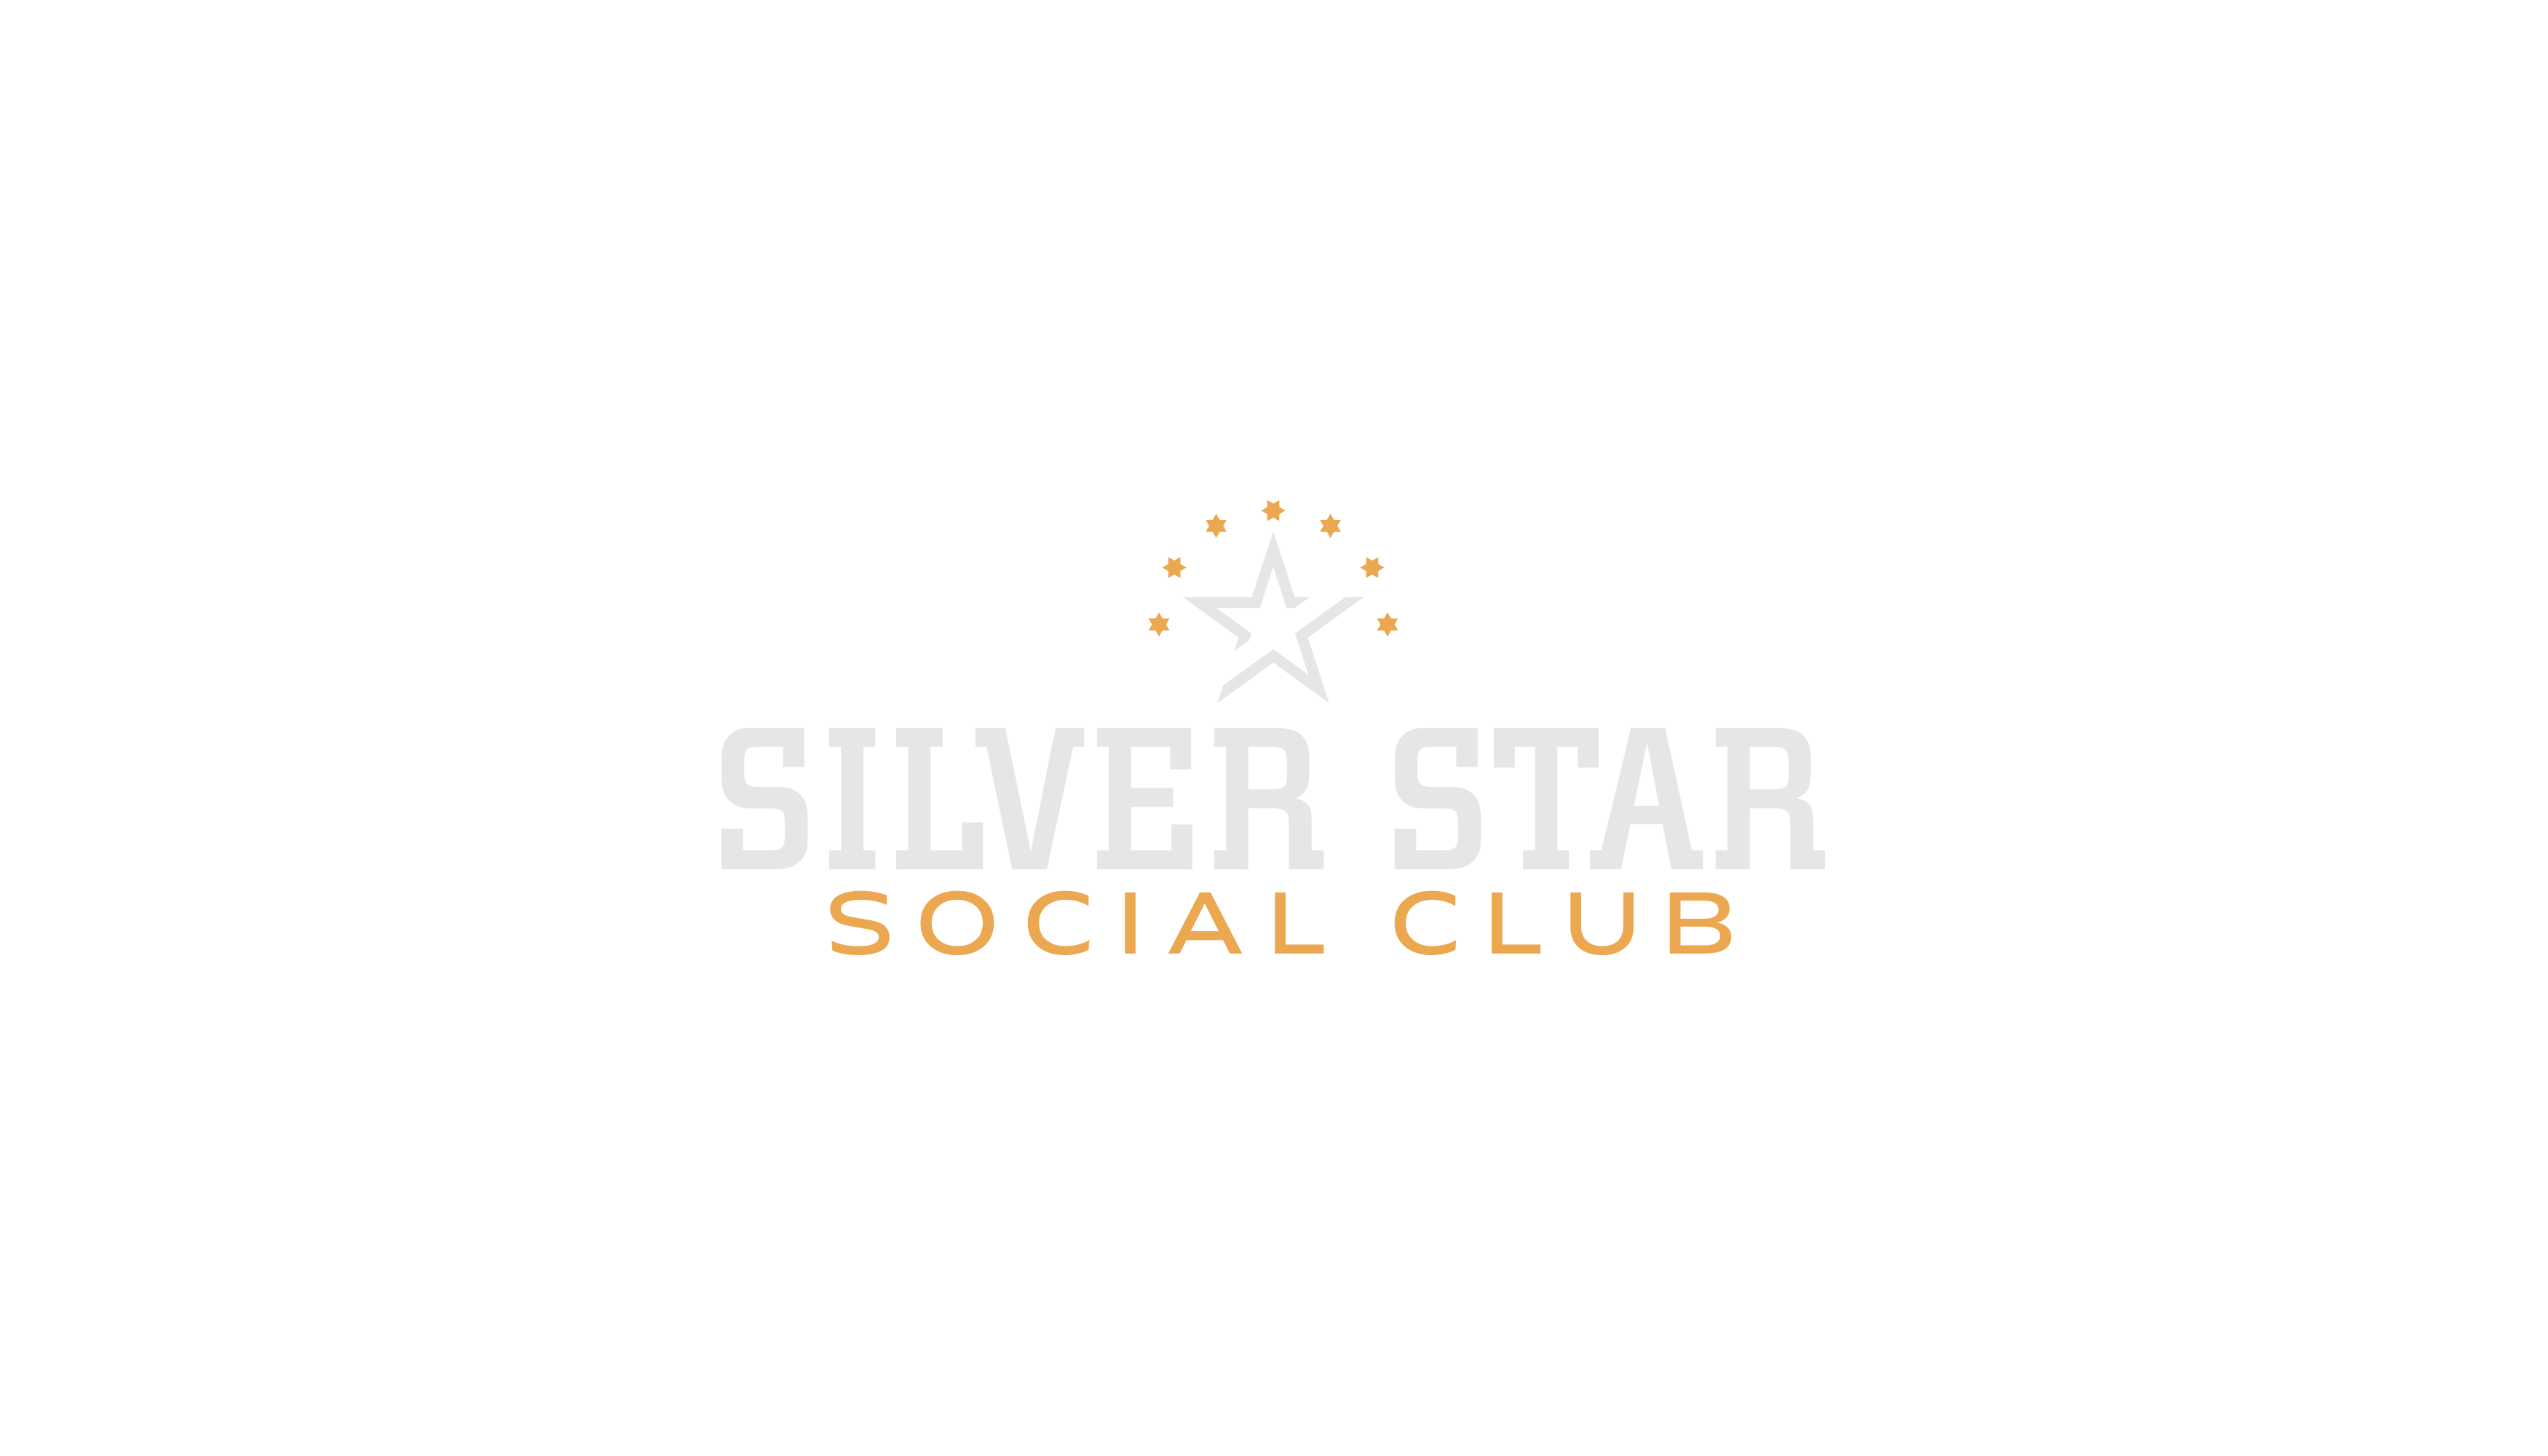 Silver Star Social Club, LLC